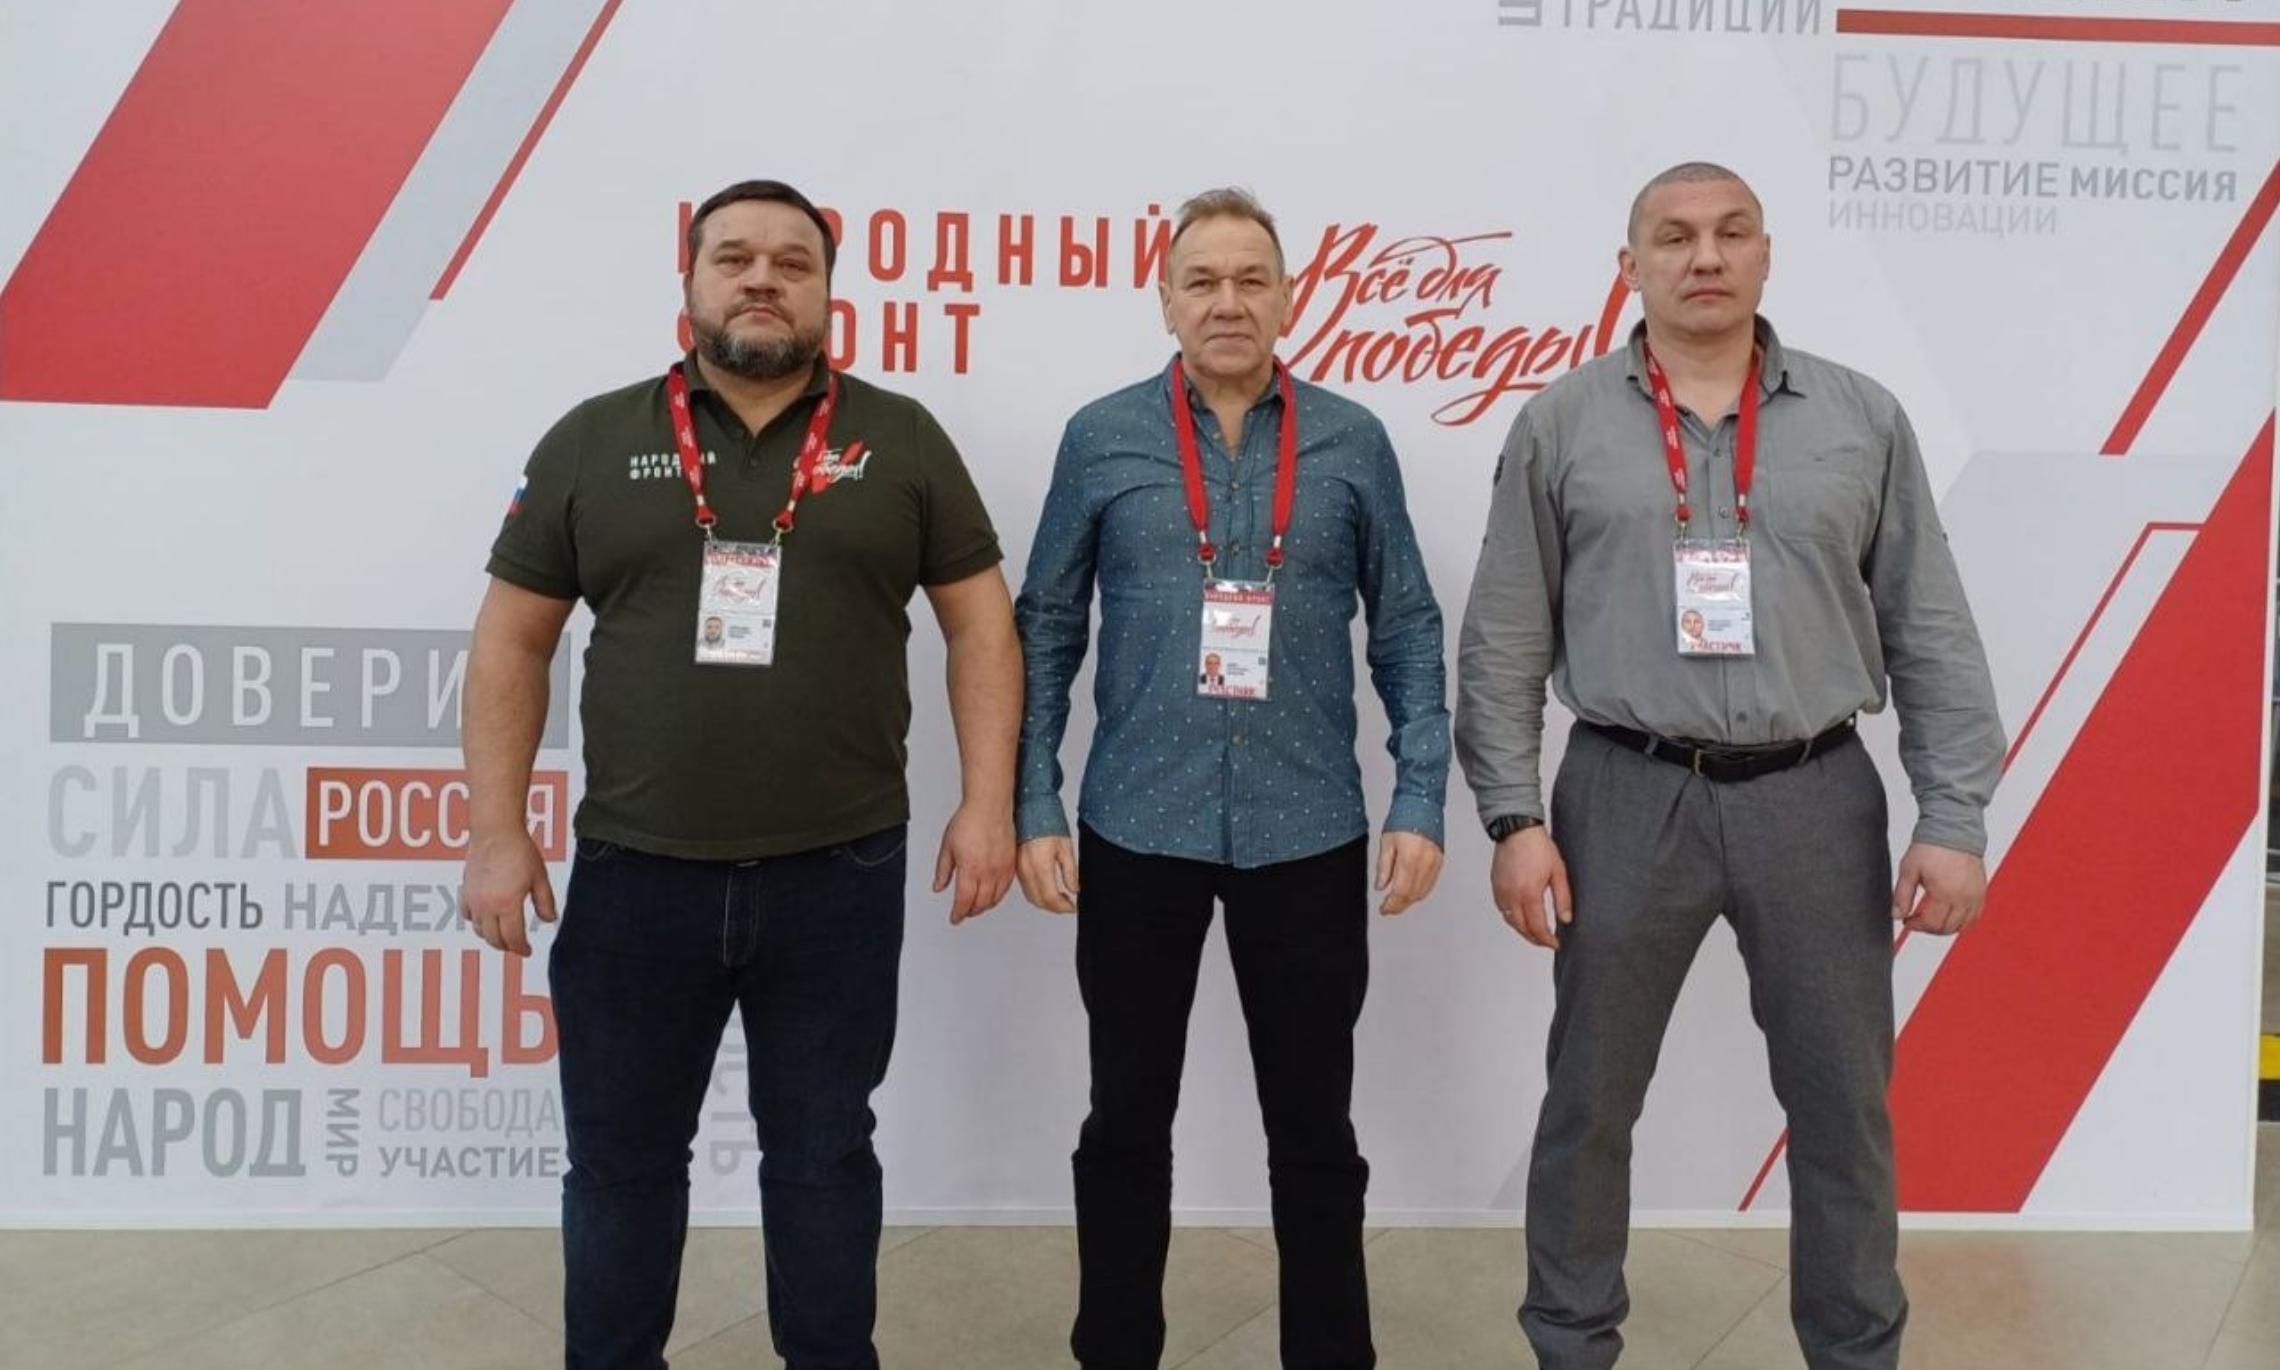 Участники делегации из Архангельска